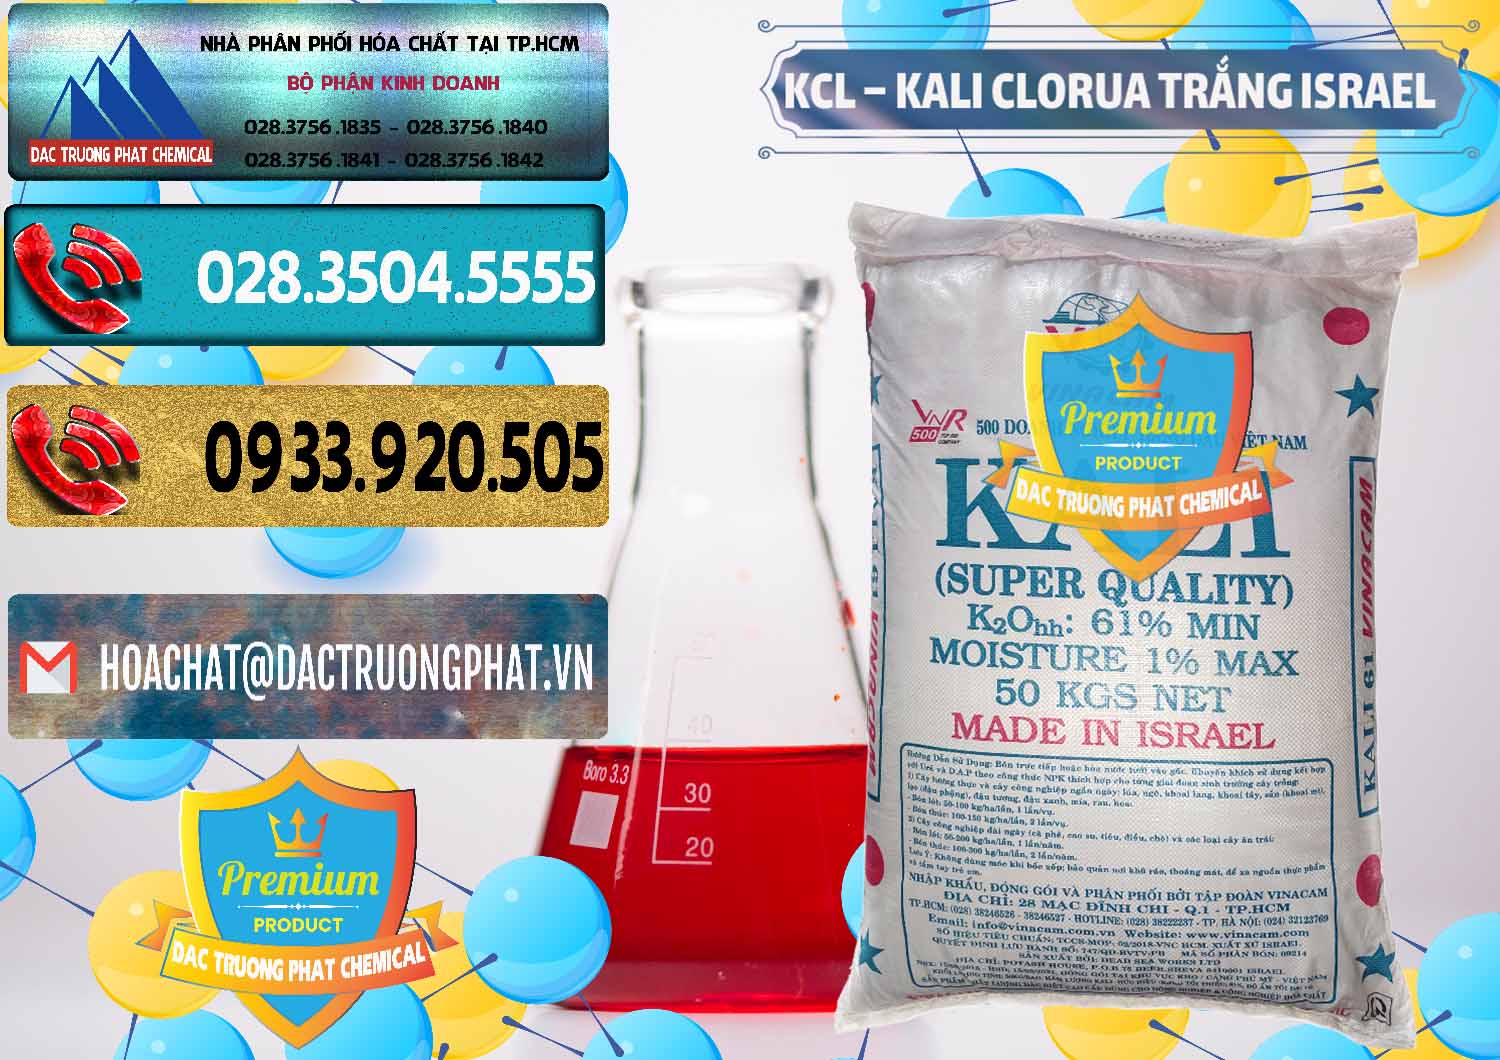 Cty chuyên bán - phân phối KCL – Kali Clorua Trắng Israel - 0087 - Chuyên phân phối ( bán ) hóa chất tại TP.HCM - hoachatdetnhuom.com